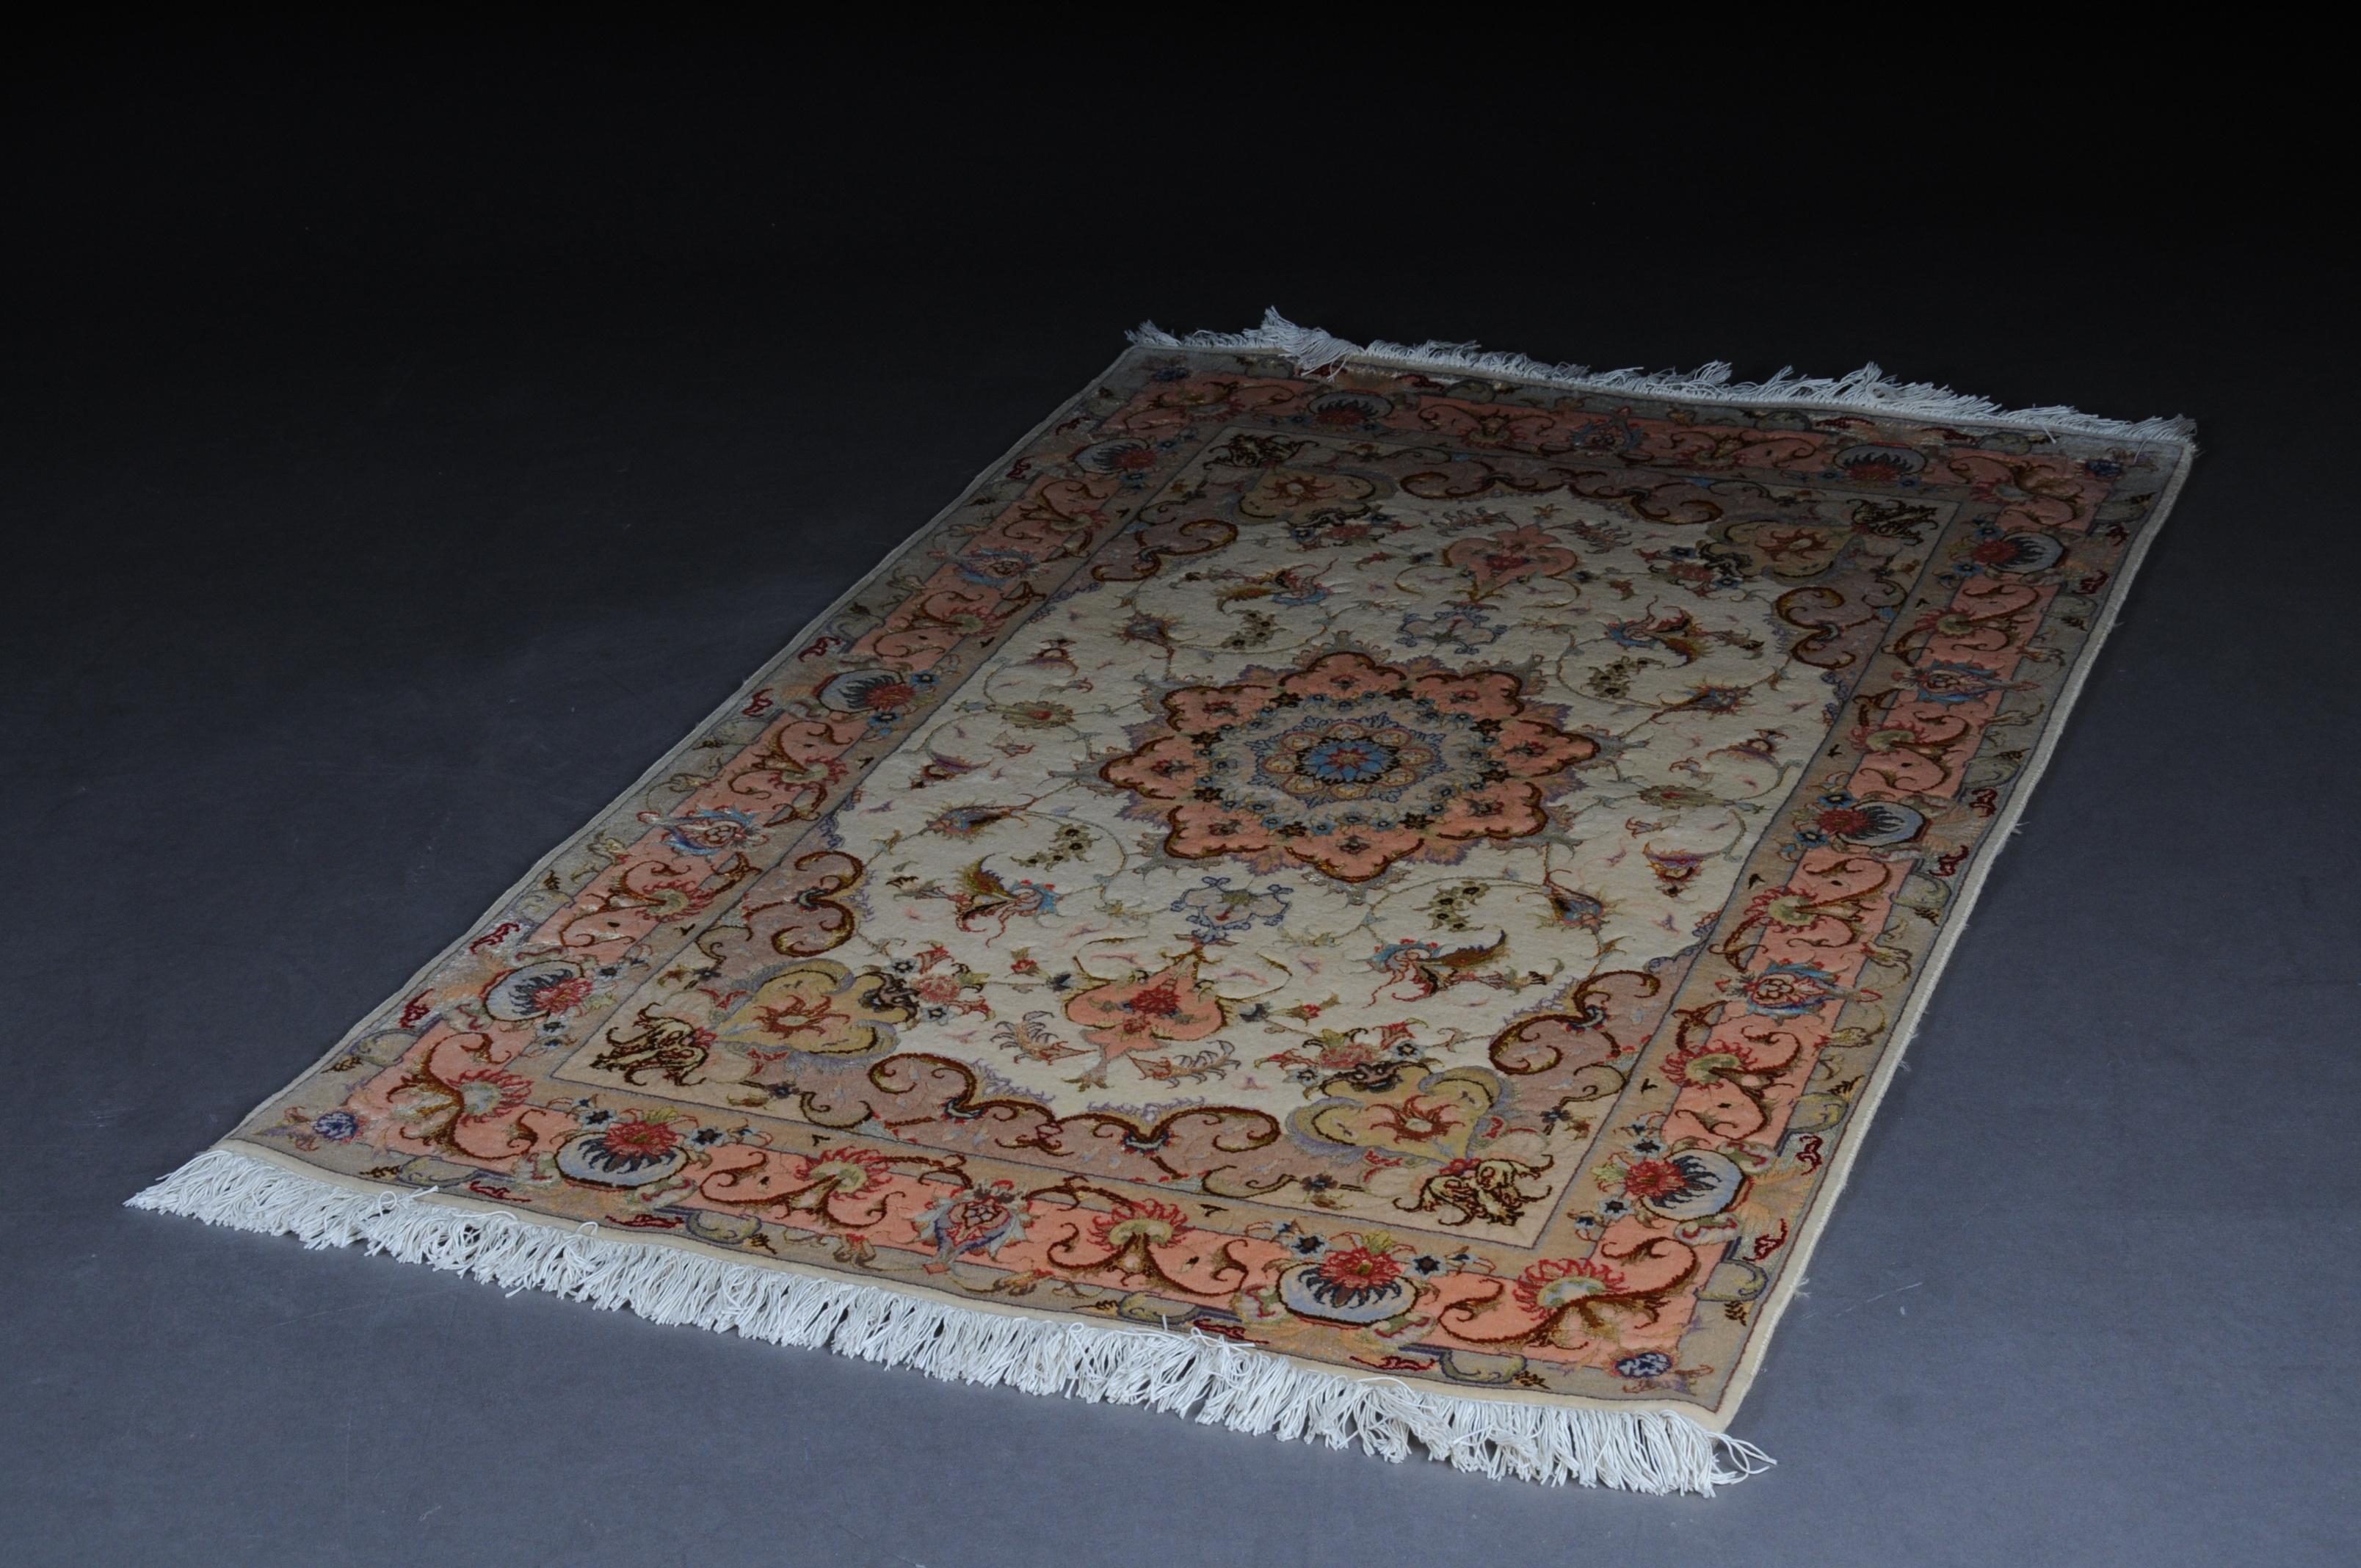 Fine laine de liège de Tabriz avec soie, vers 1980, 160 x 100 cm

Tapis de Tabriz finement tissé avec de la laine de liège et de la soie. Décors structurés de manière symétrique sur un fond de couleur pastel. Un mandala en forme d'étoile au